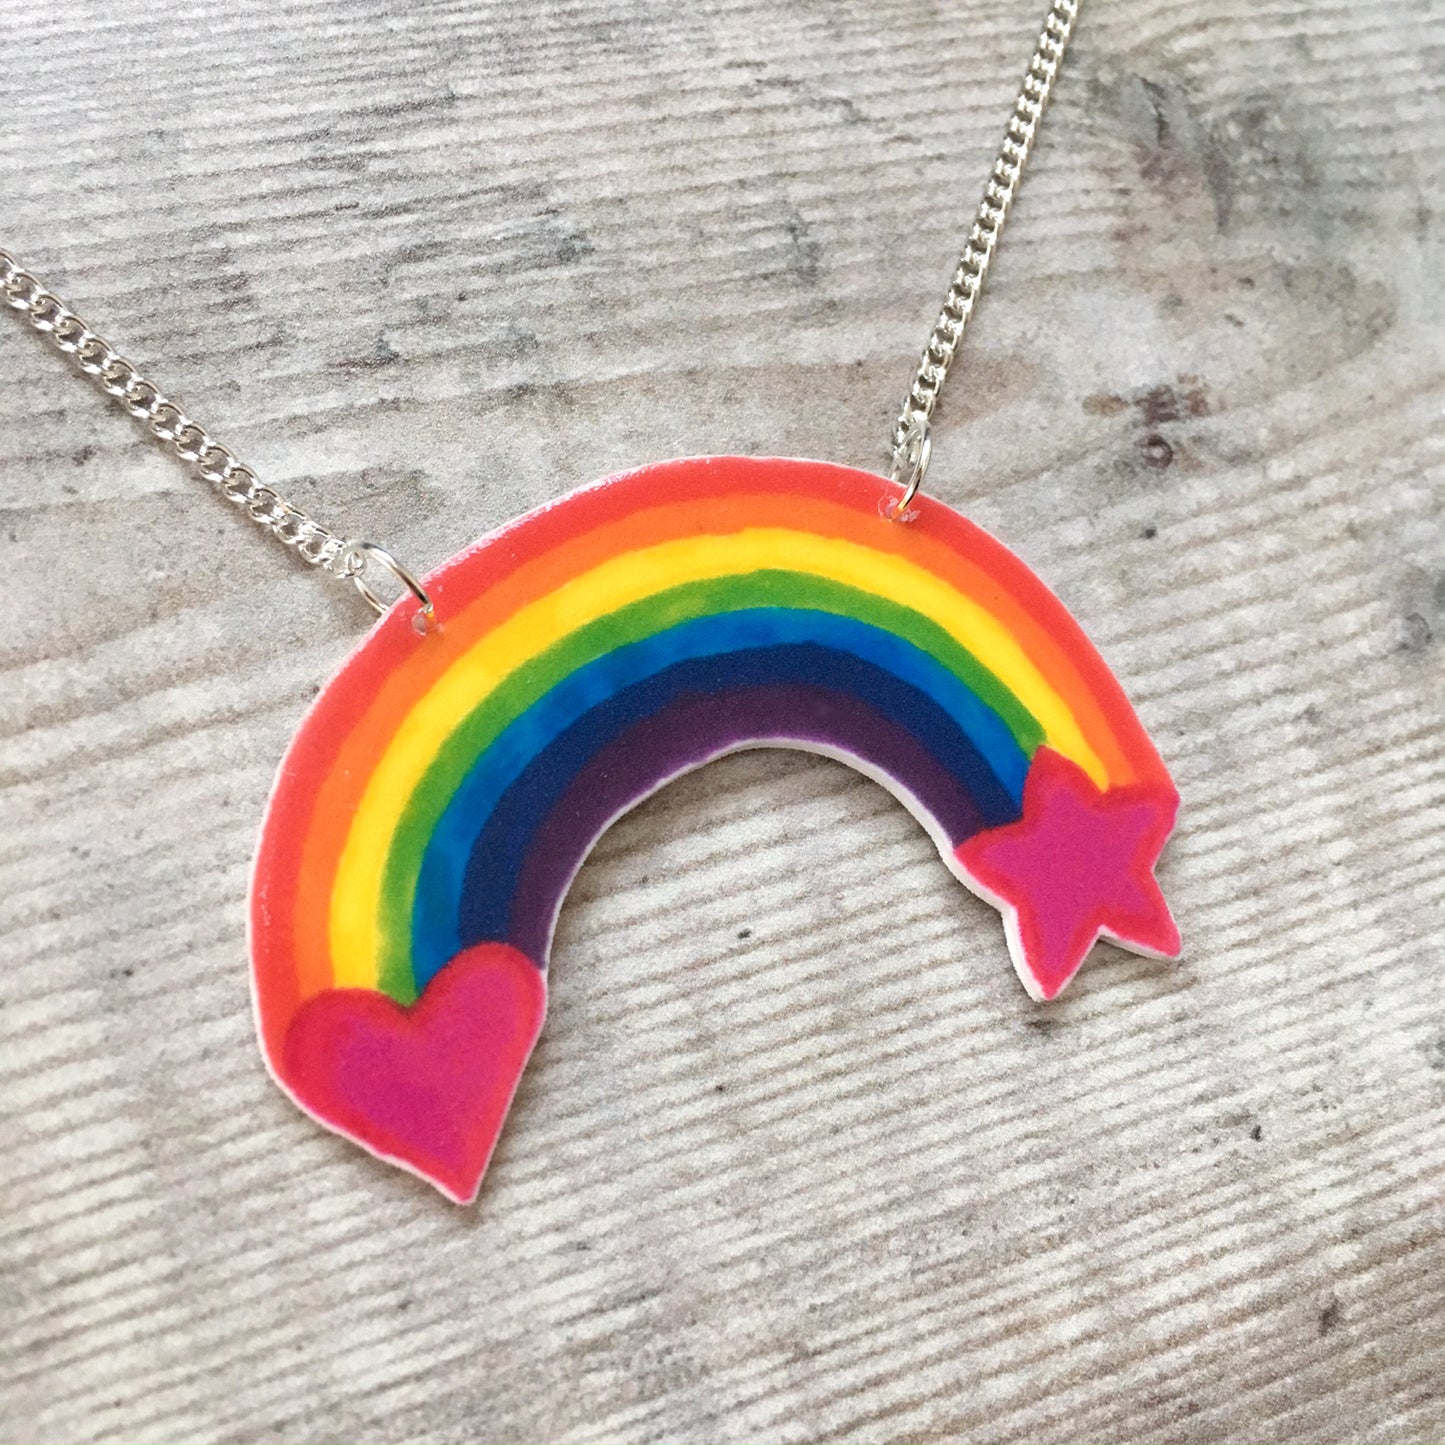 Rainbow colour pop bright pendant necklace